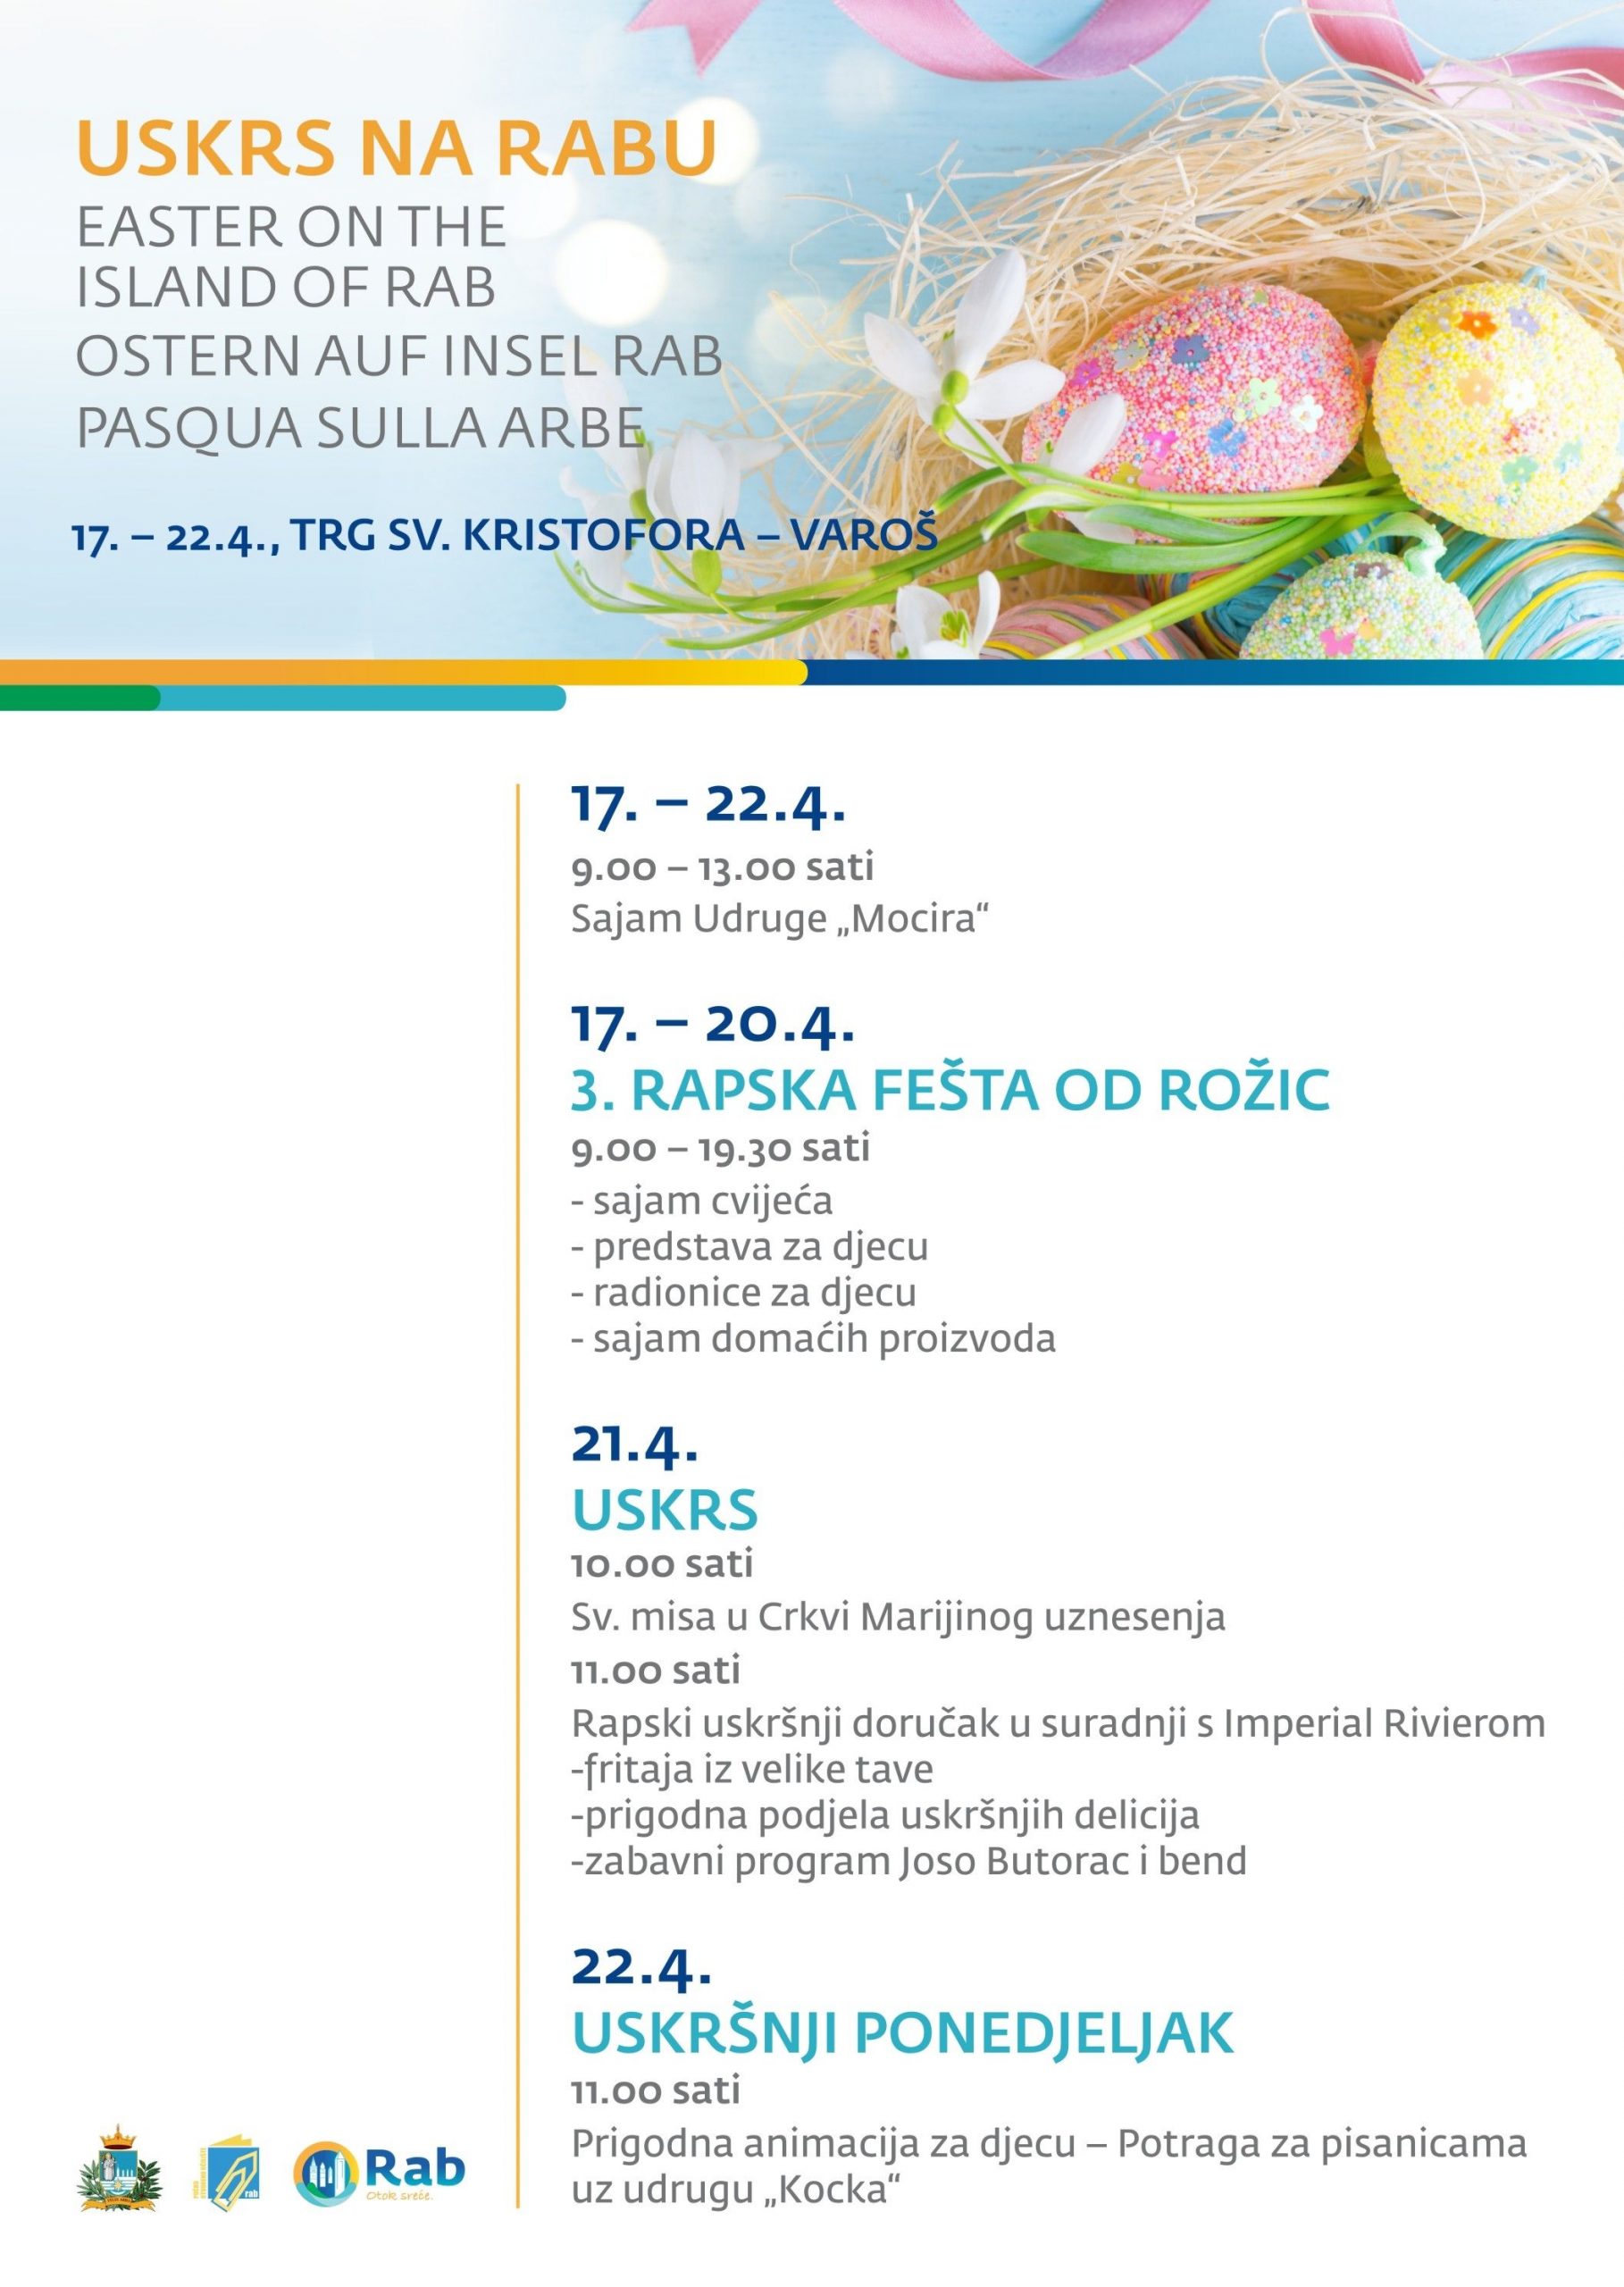 Program “USKRSA NA RABU” od 17. do 22. travnja 2019.